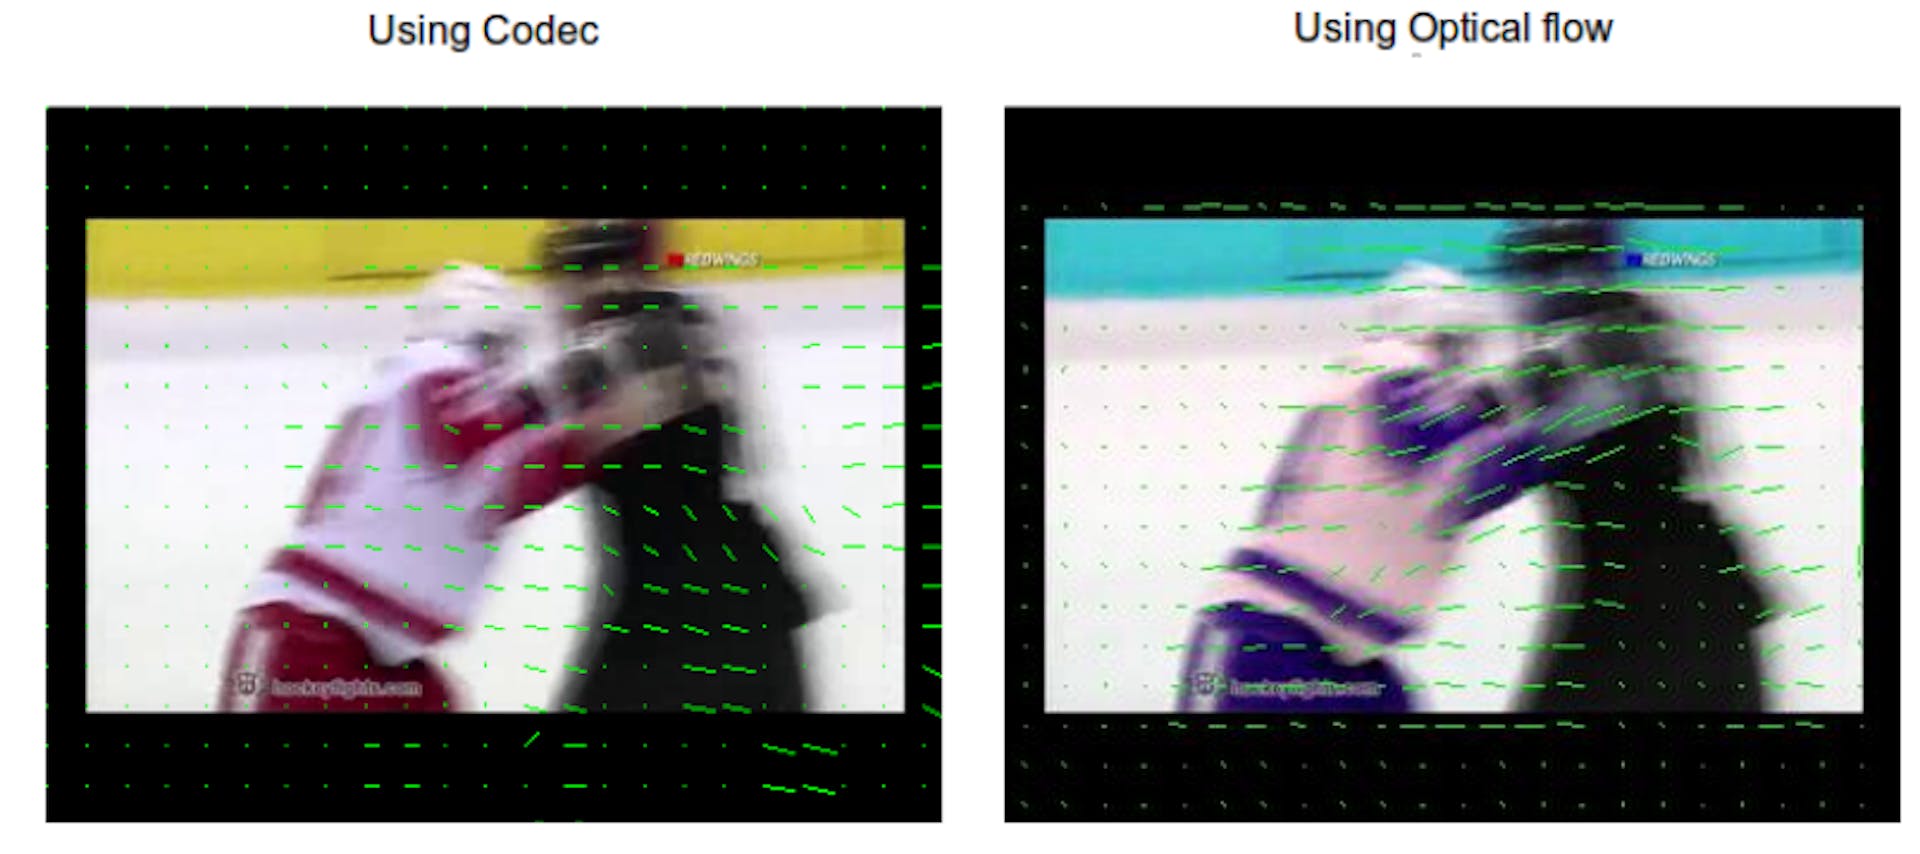 그림 3.5: 코덱을 사용하여 추출한 프레임과 광학 흐름을 사용하여 추출한 프레임의 모션 정보.